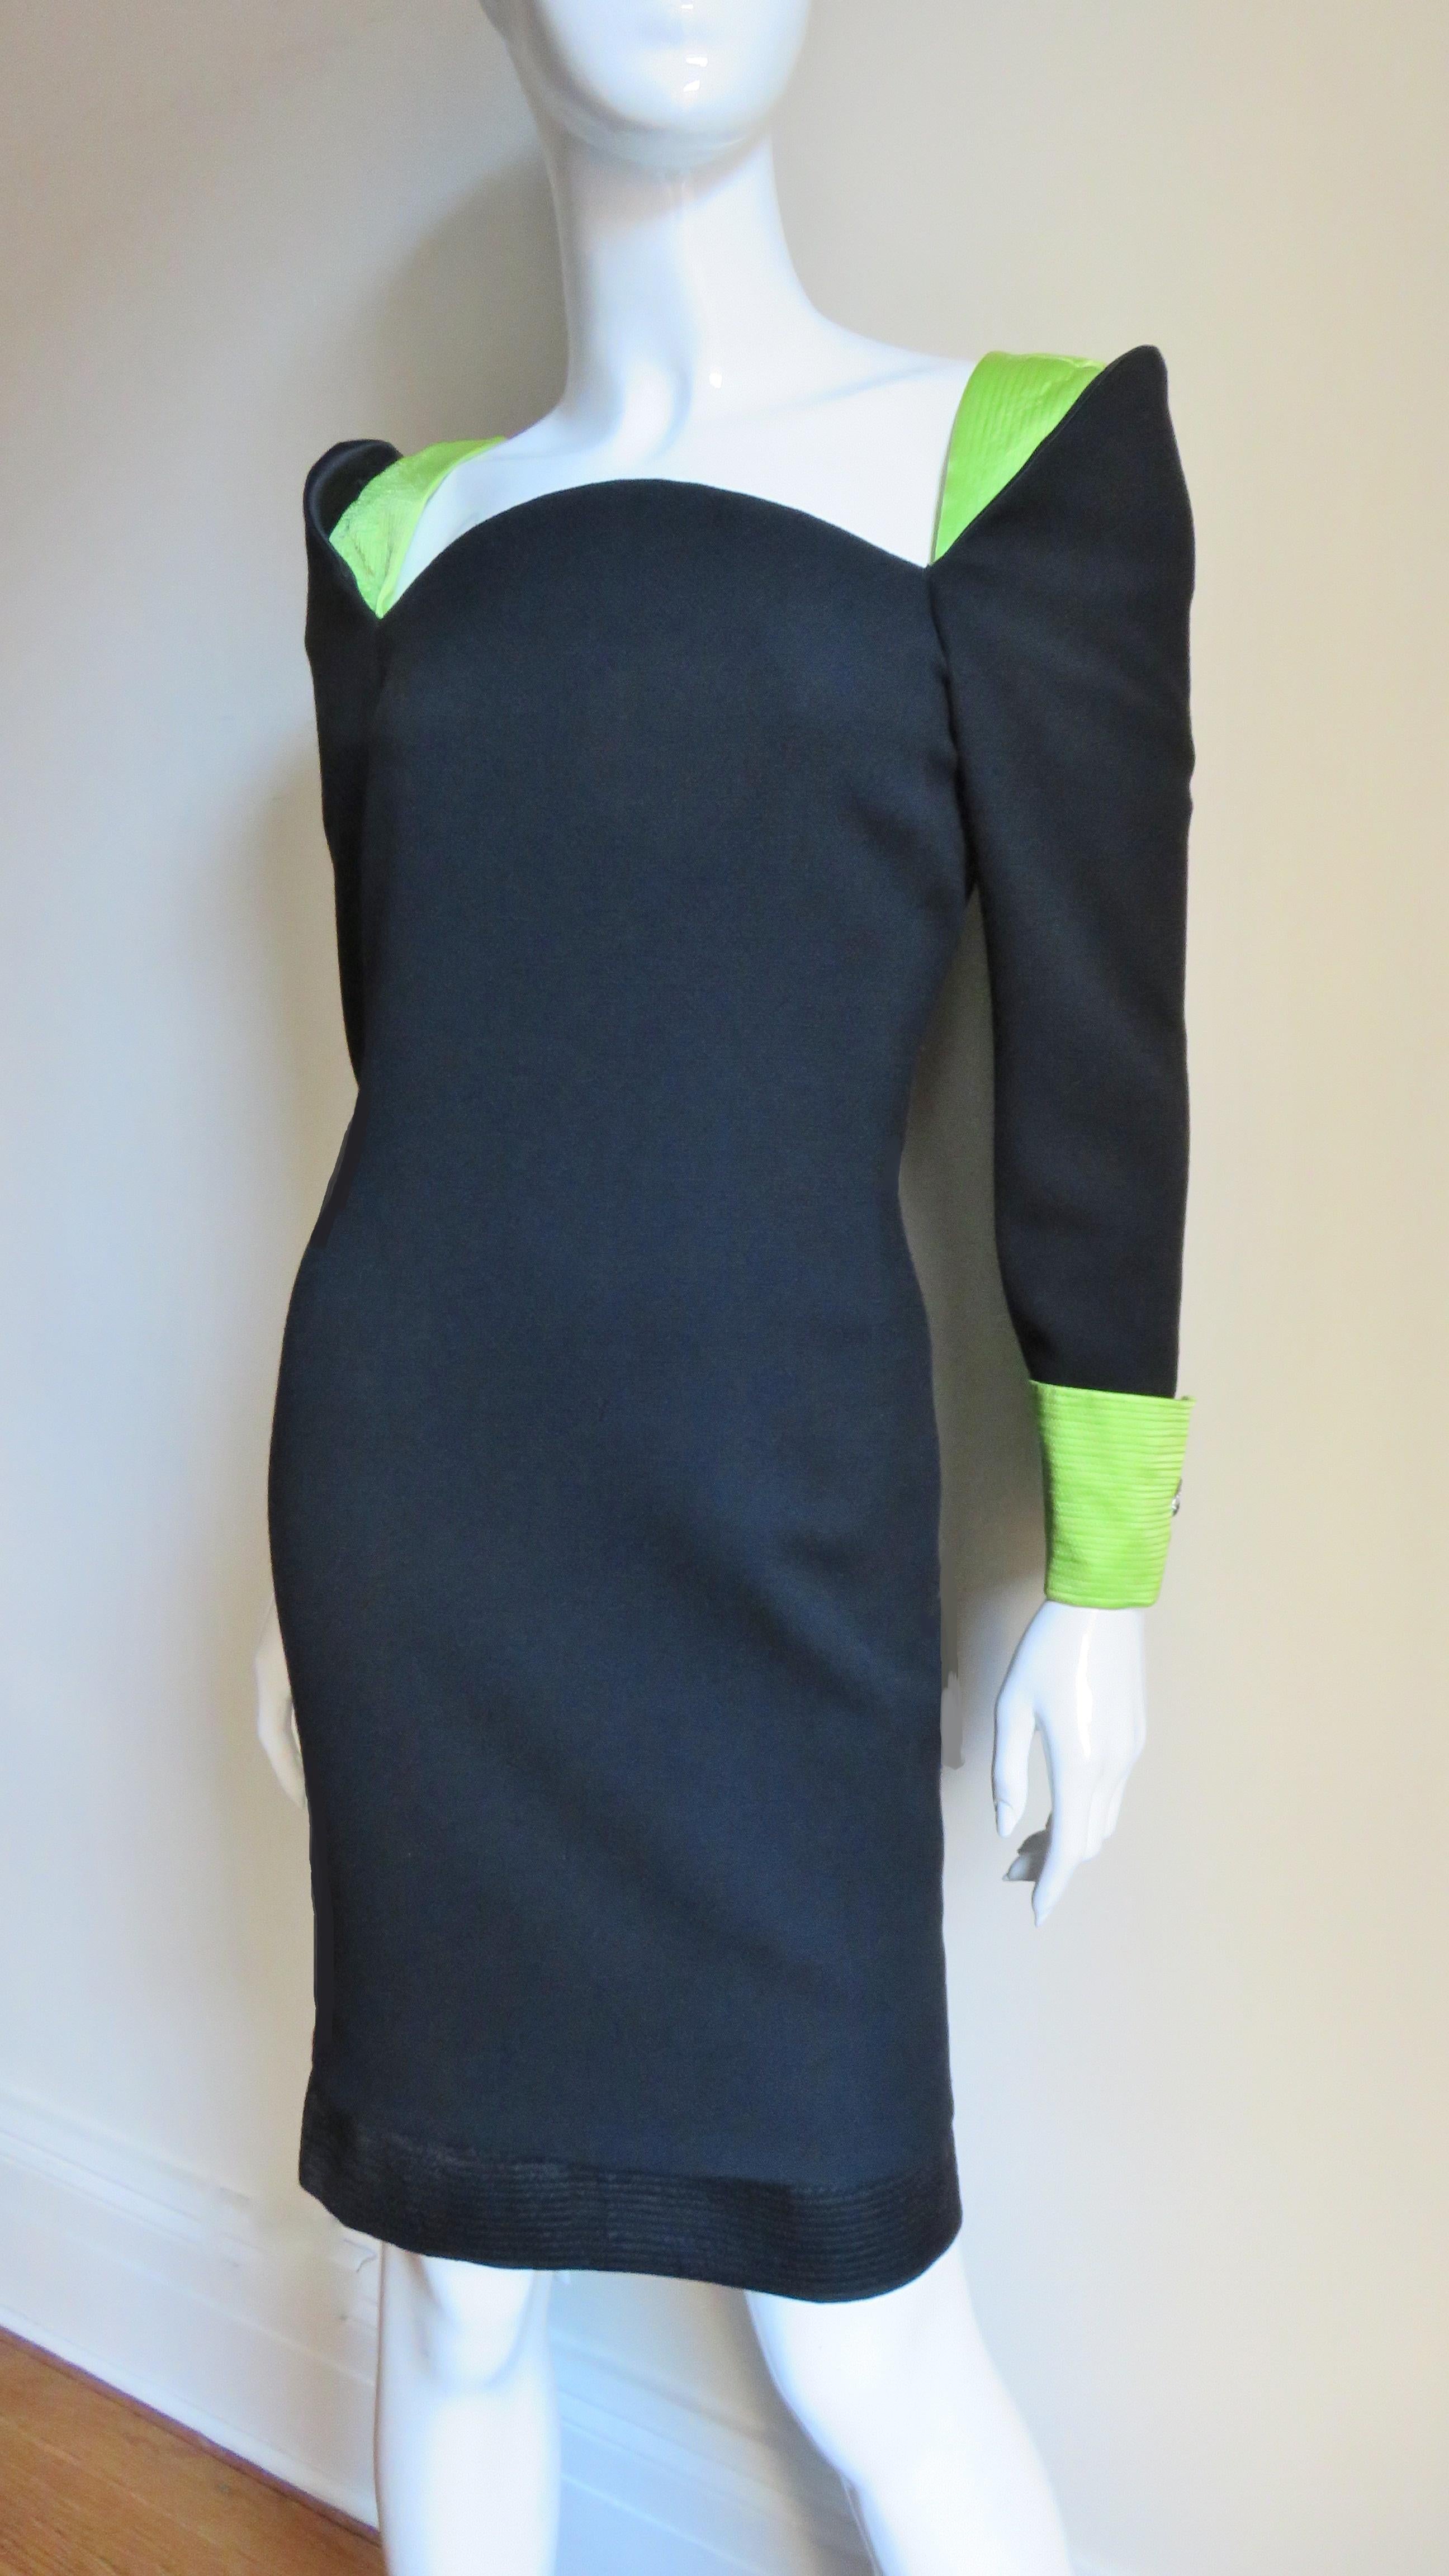 Une fabuleuse robe de Gianni Versace Couture en laine noire et soie verte.  Il est semi-ajusté, avec des poignets repliés, des boutons de manchette élaborés et des épaules insérées, le tout en soie vert vif, souligné par des rangées de surpiqûres.